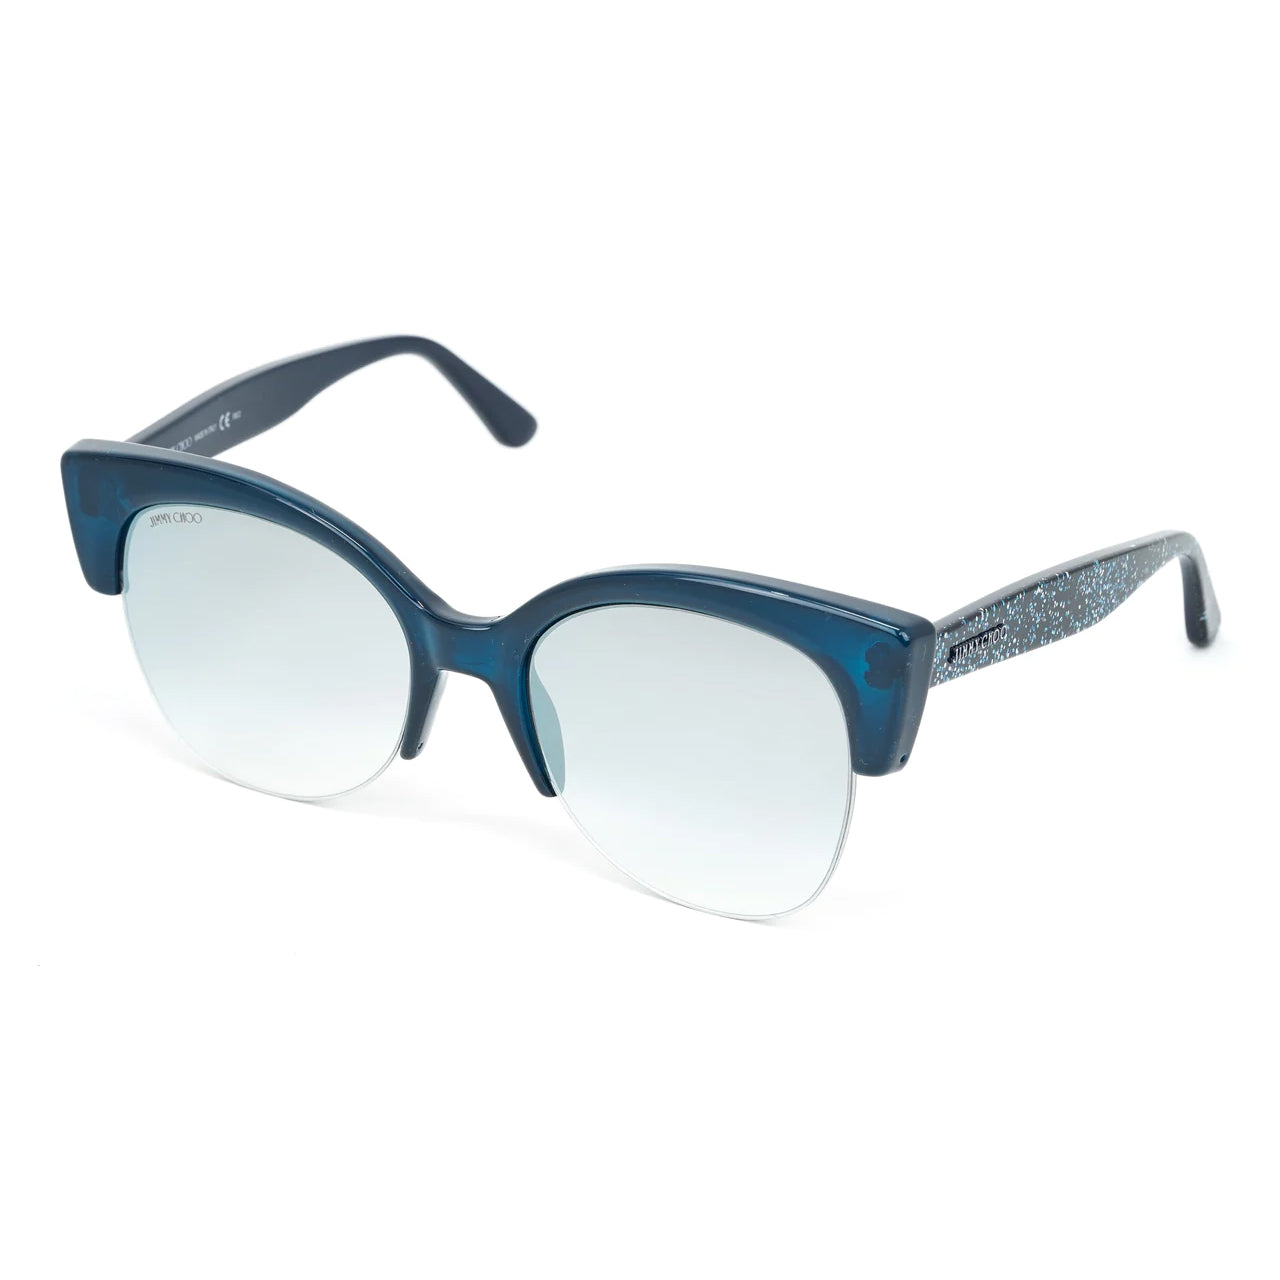 Calvin Klein Men's Sunglasses Classic Square Matte Black/Cobalt